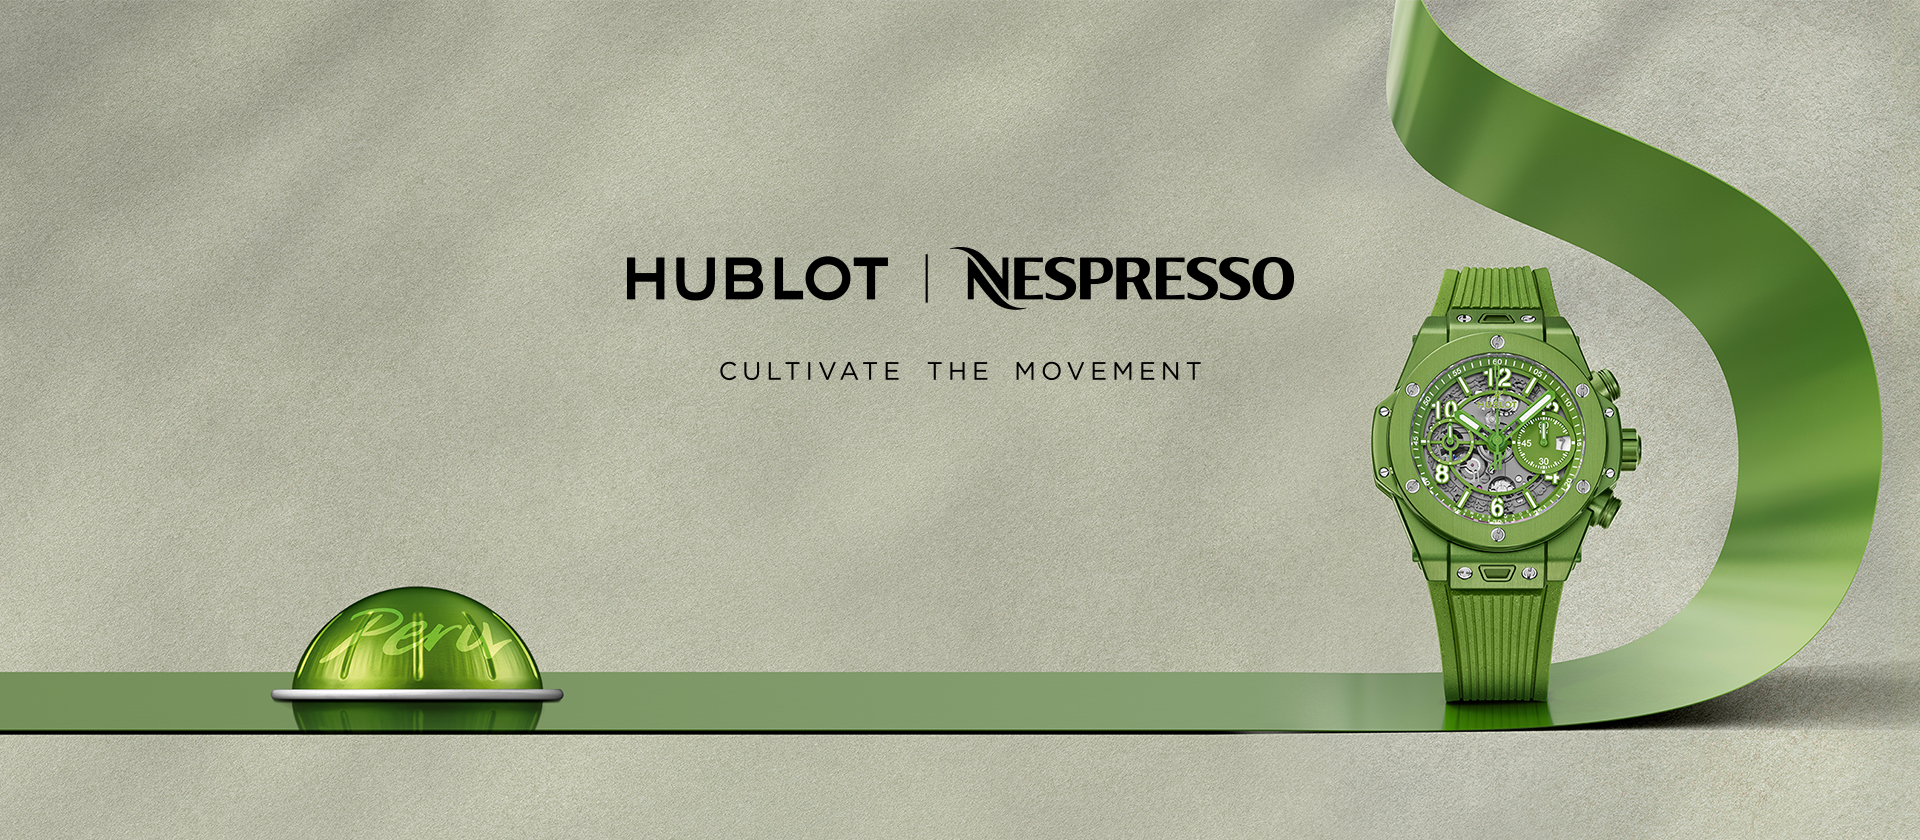 NespressoHublot-CH-LP-lancement-header-1920x840.png